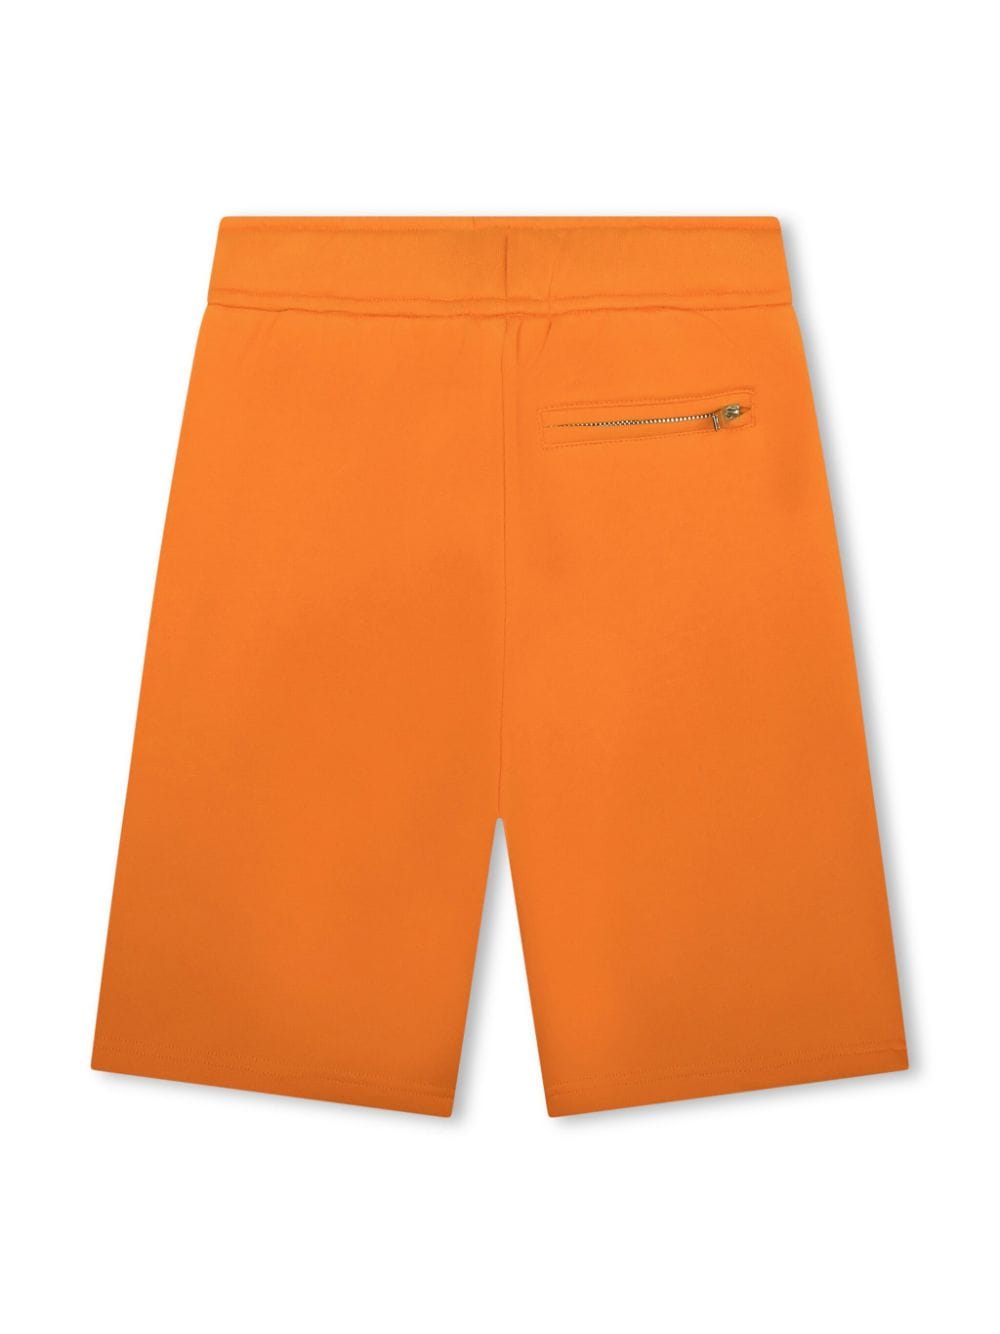 Shorts arancione  bambino